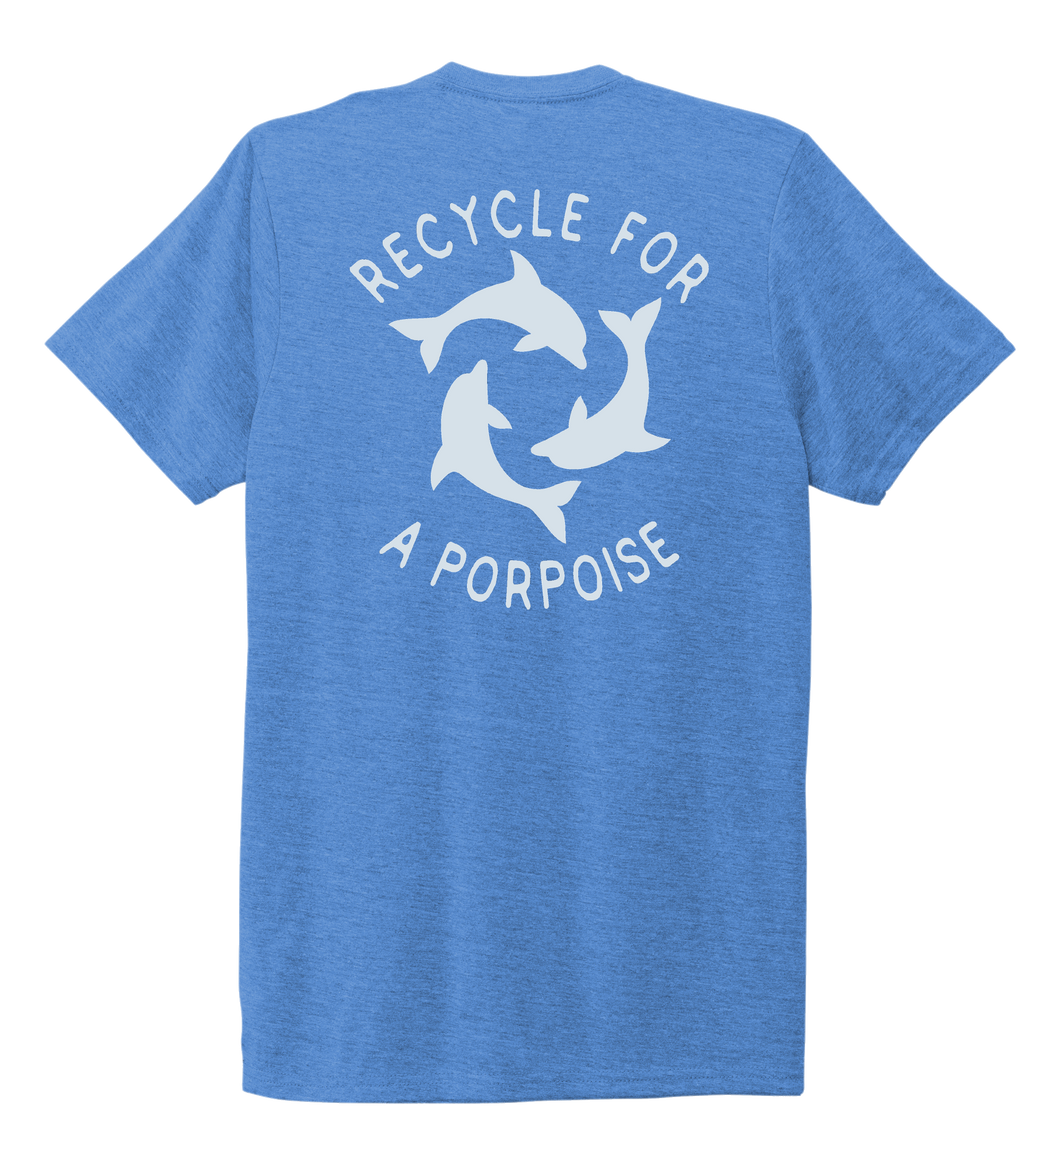 StepChange, Porpoise, Unisex Crew Neck T-shirt in Sky Blue